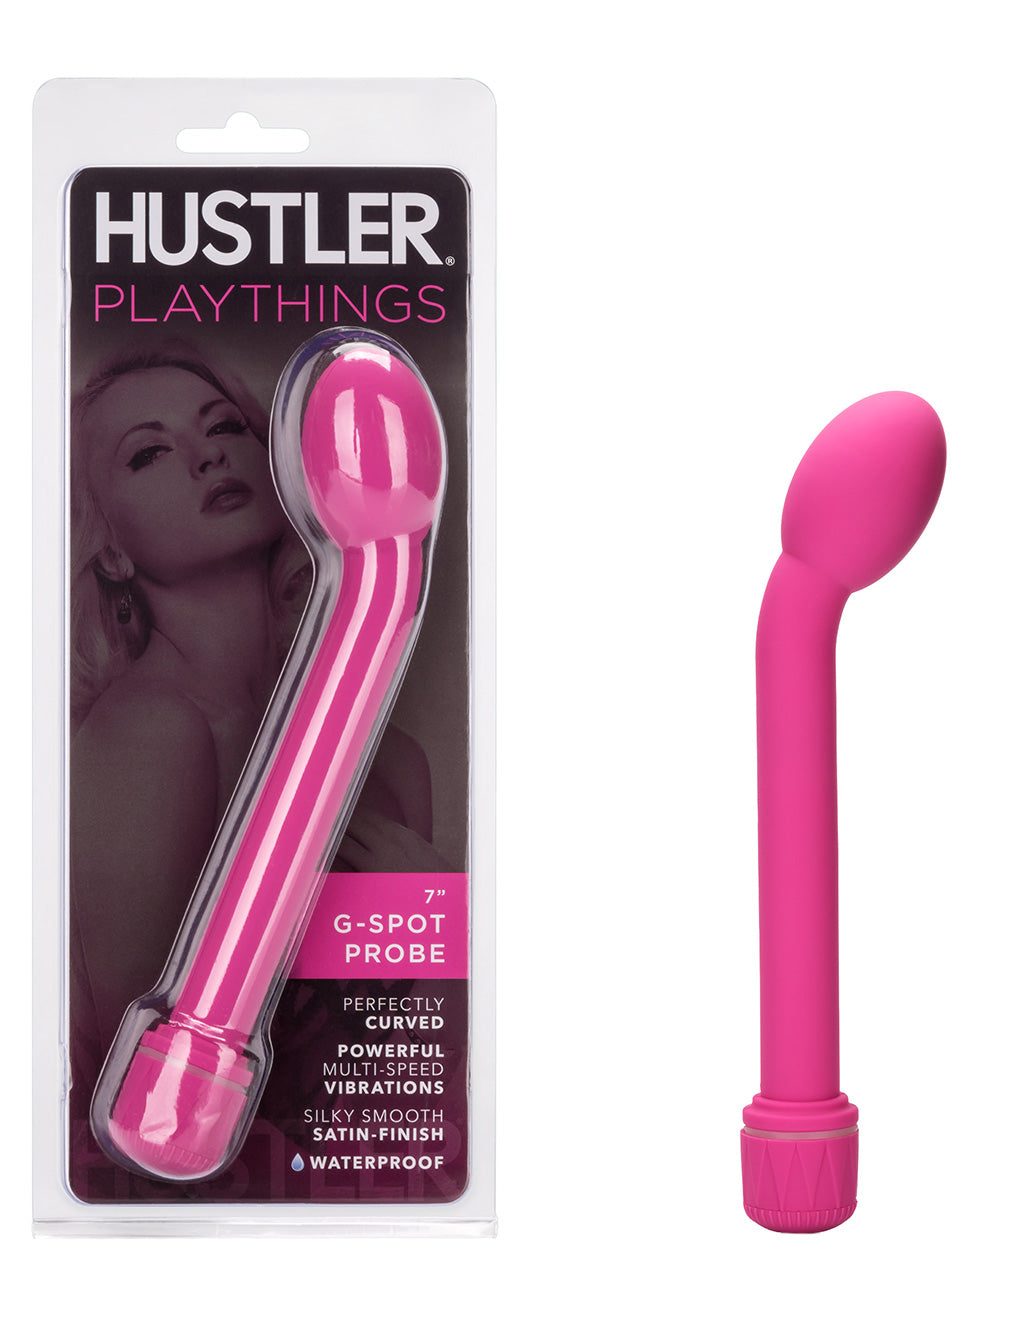 Hustler Playthings G-Spot Probe Vibrator - Novelties - packaging